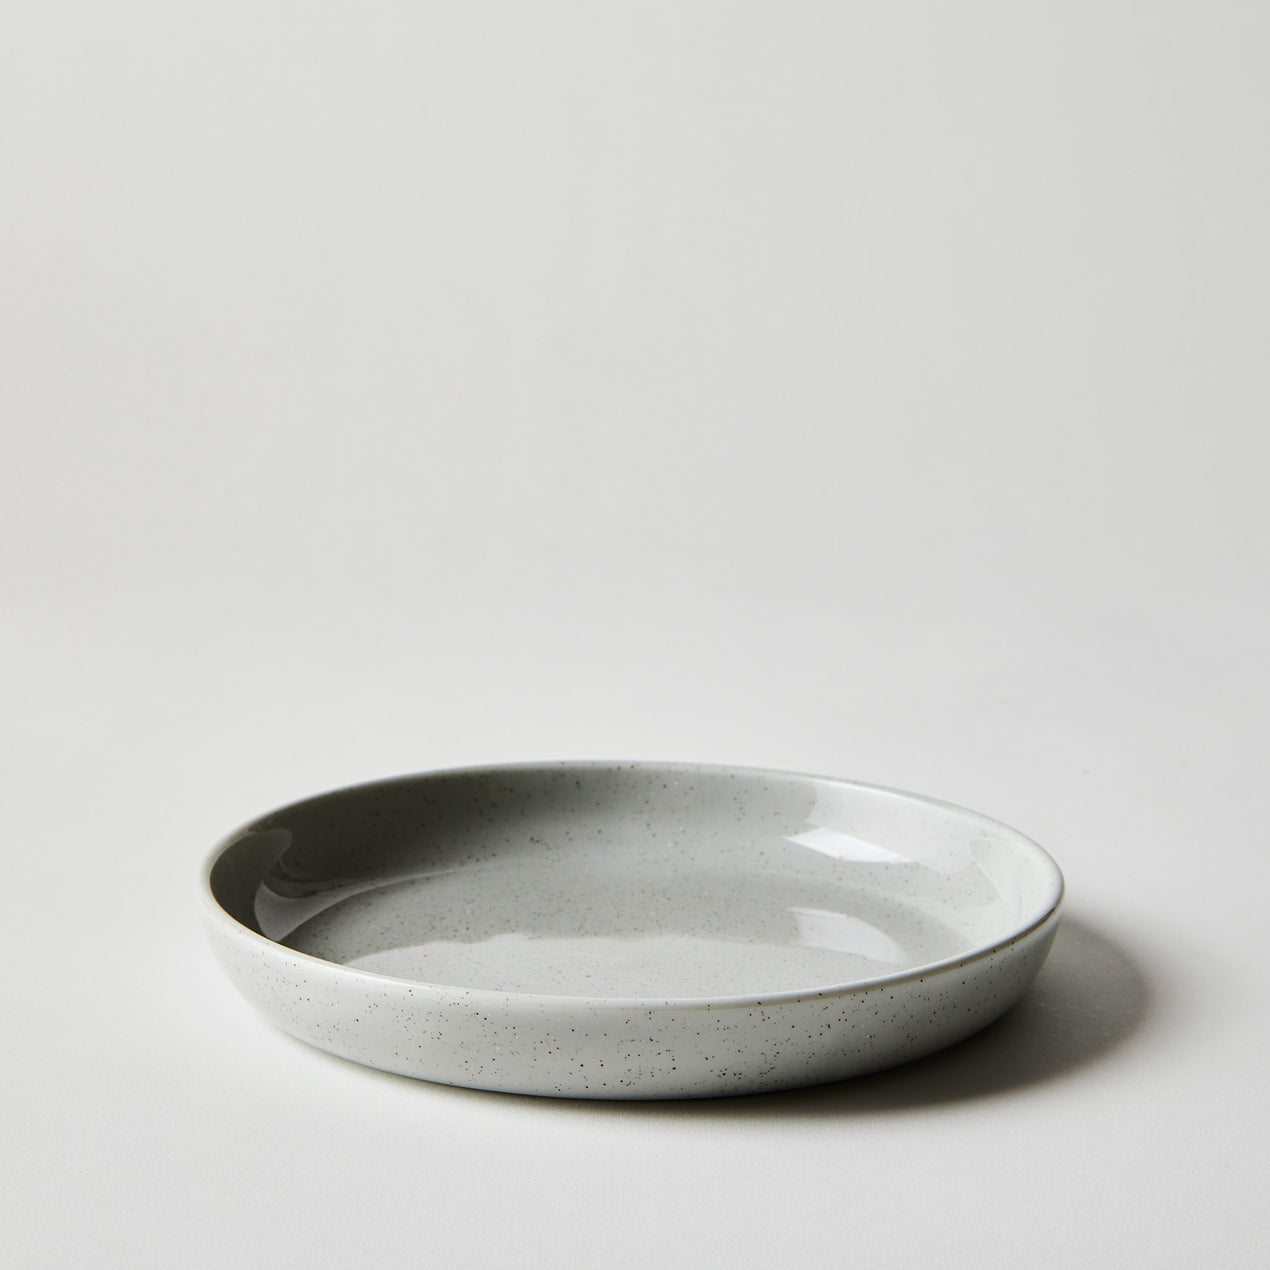 Raina Speckled Porcelain Grey Salad Plate